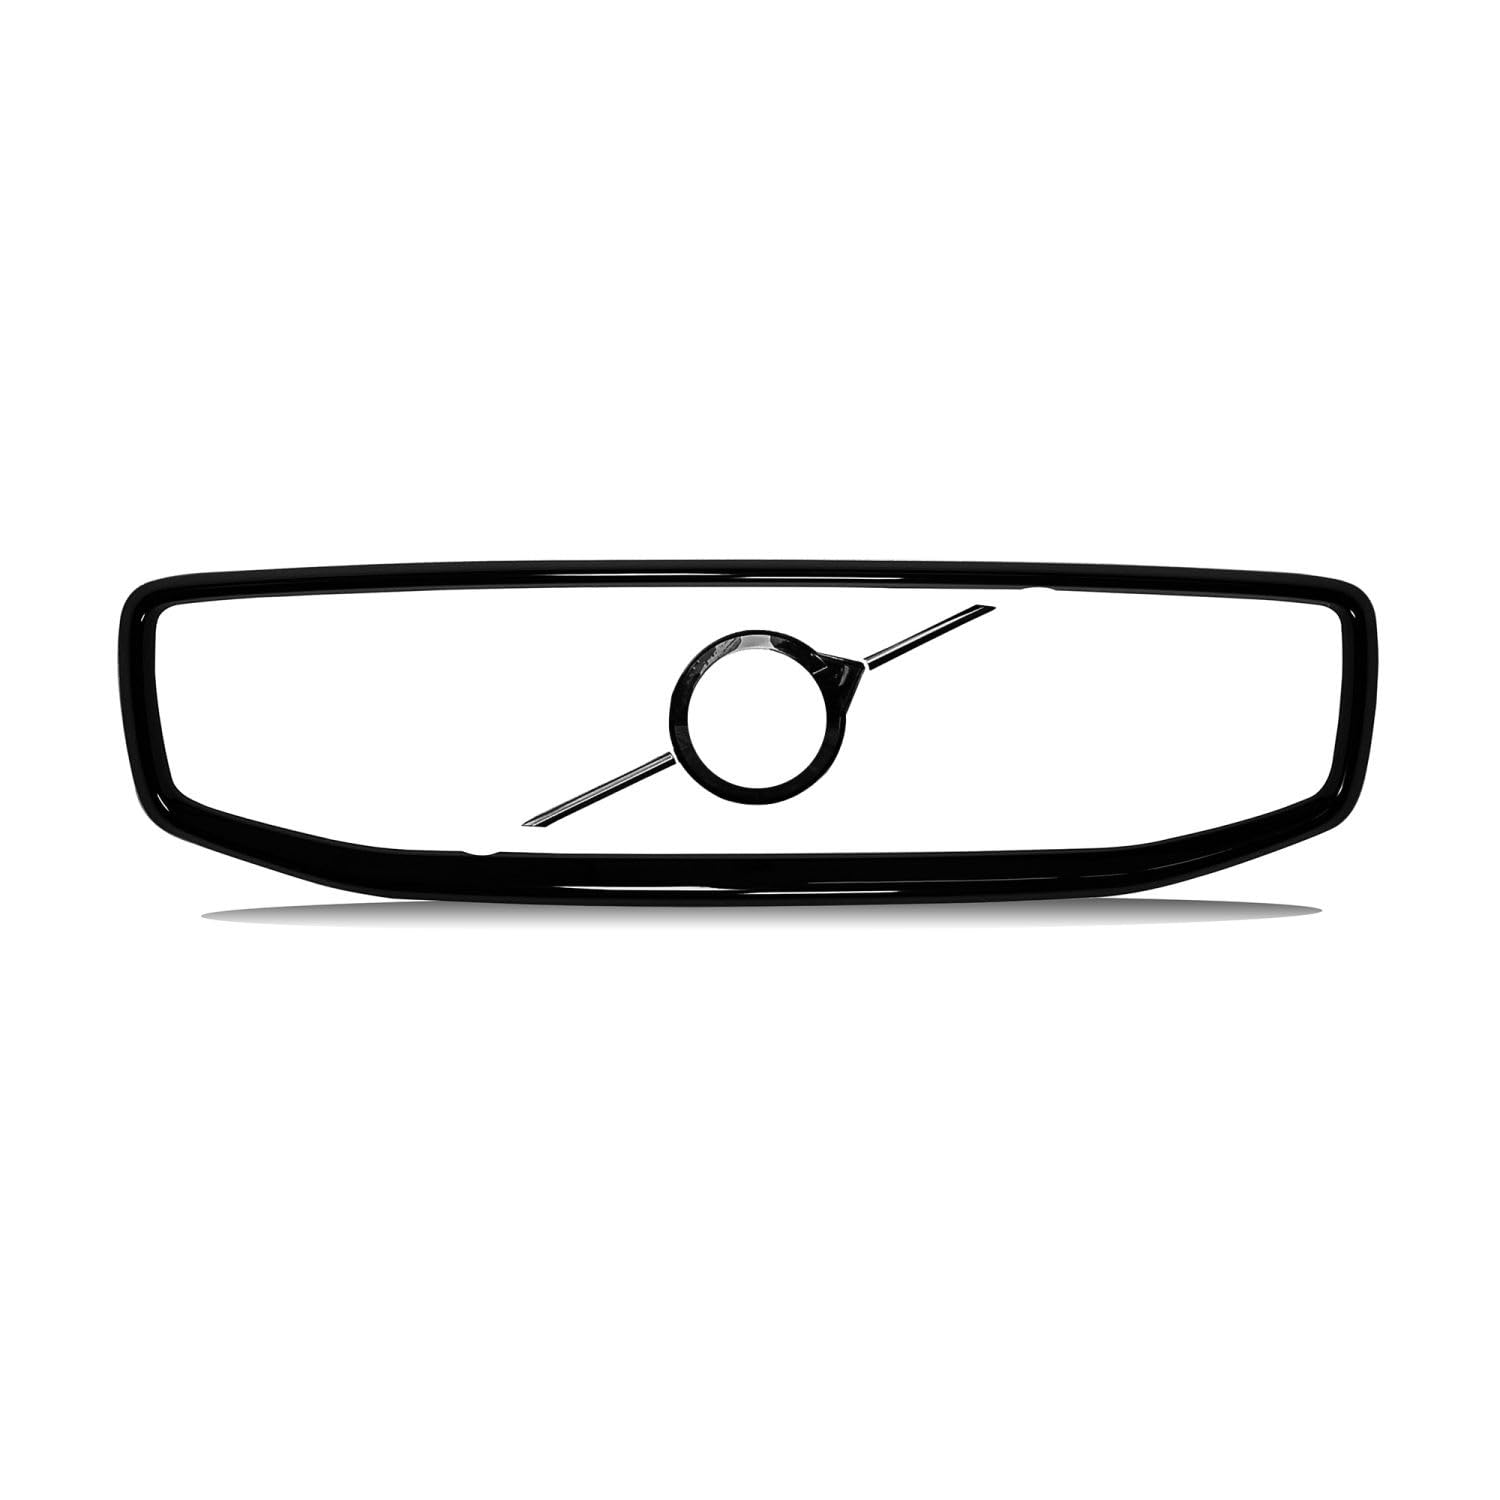 SANNITOU Auto Emblem Aufkleber für Volvo XC60 2018-2021,Autoaufkleber Kühlergrill Front Motorhaube Kofferraum 3D Logo Heckklappen Buchstaben Selbstklebende Ersatz Dekoration von SANNITOU